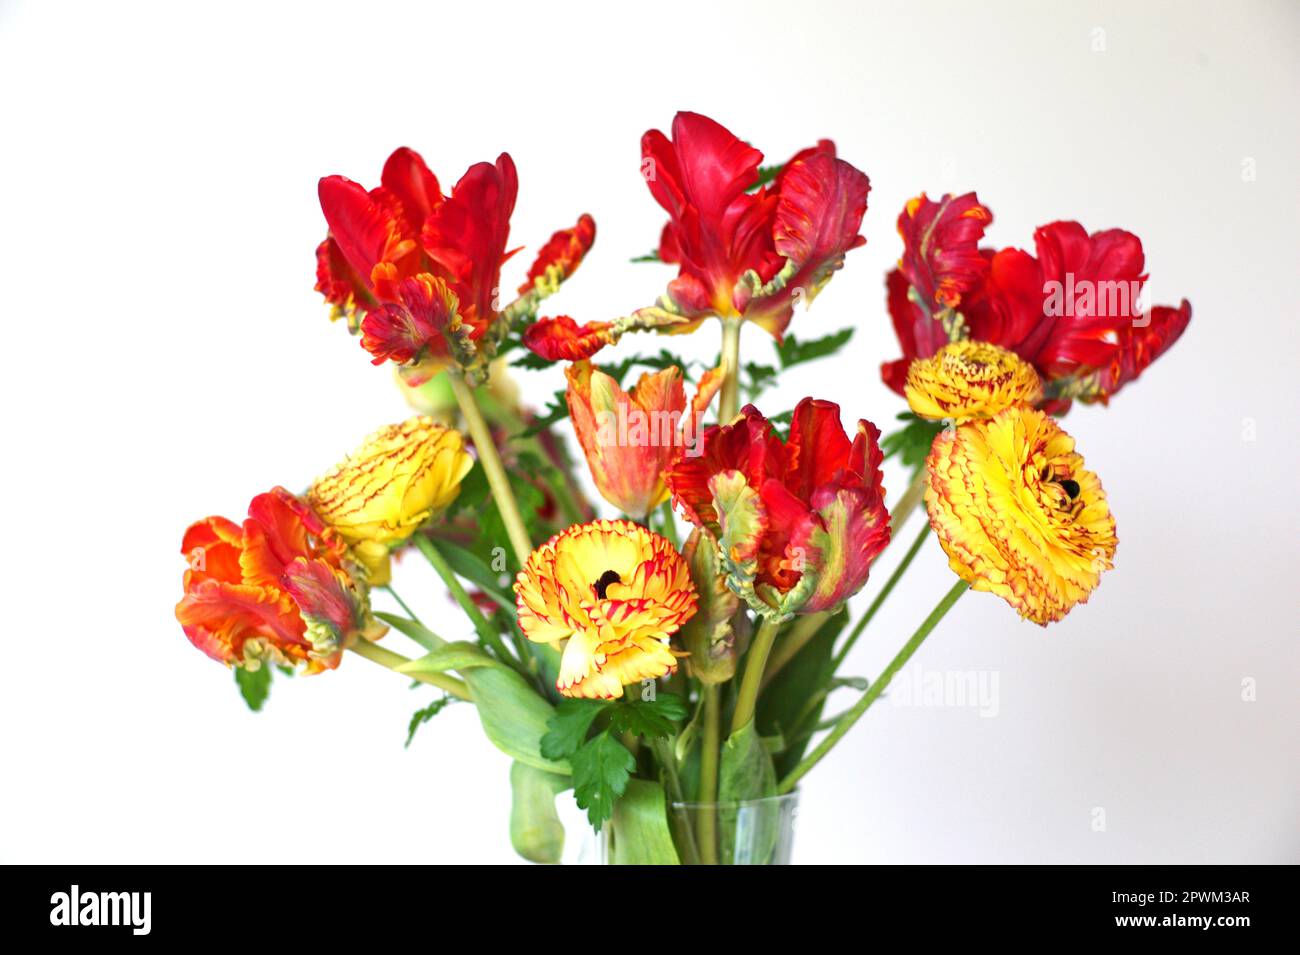 In Großbritannien angebaute Schnittblumen mit Papageientulpen und Ranunculus, Großbritannien Stockfoto